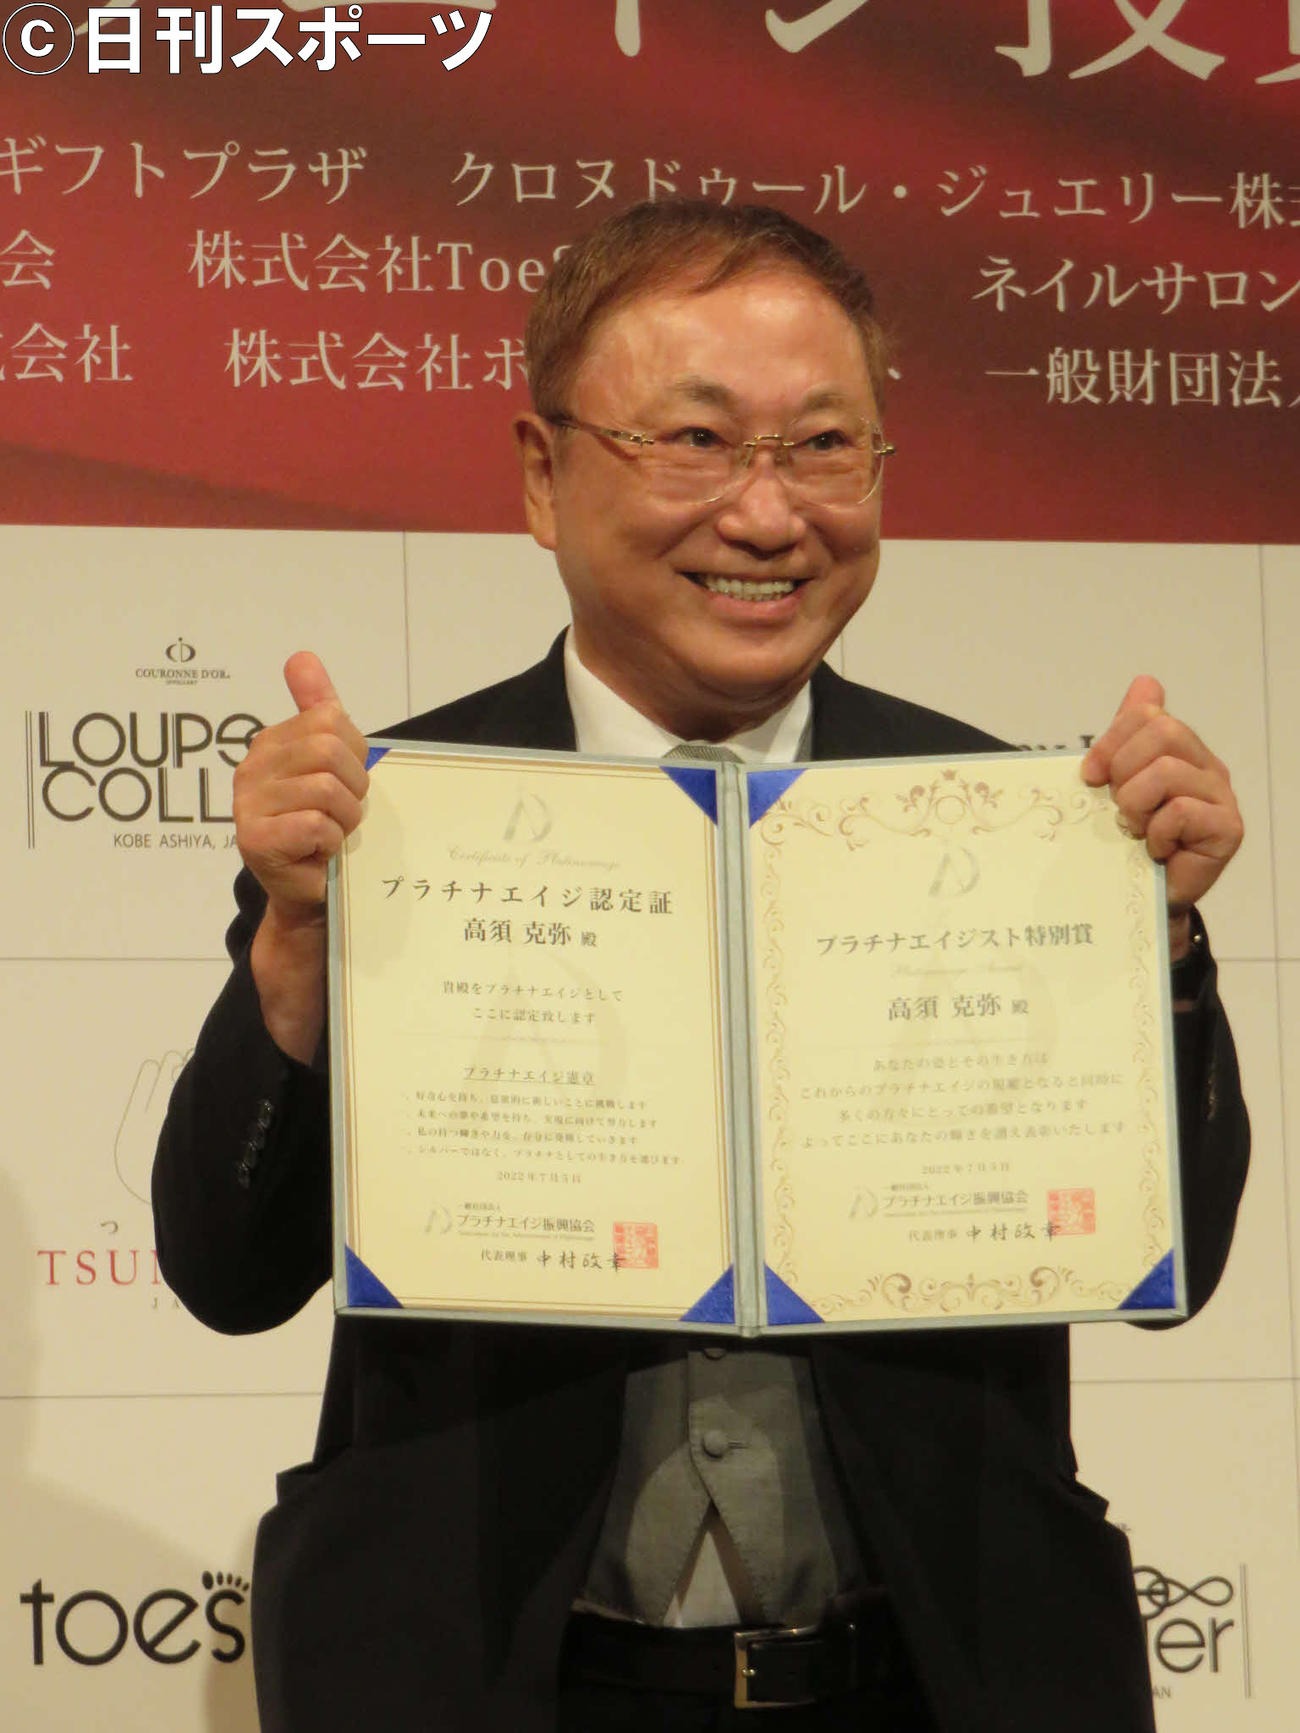 ベストプラチナエイジスト特別賞を受賞した高須克弥氏